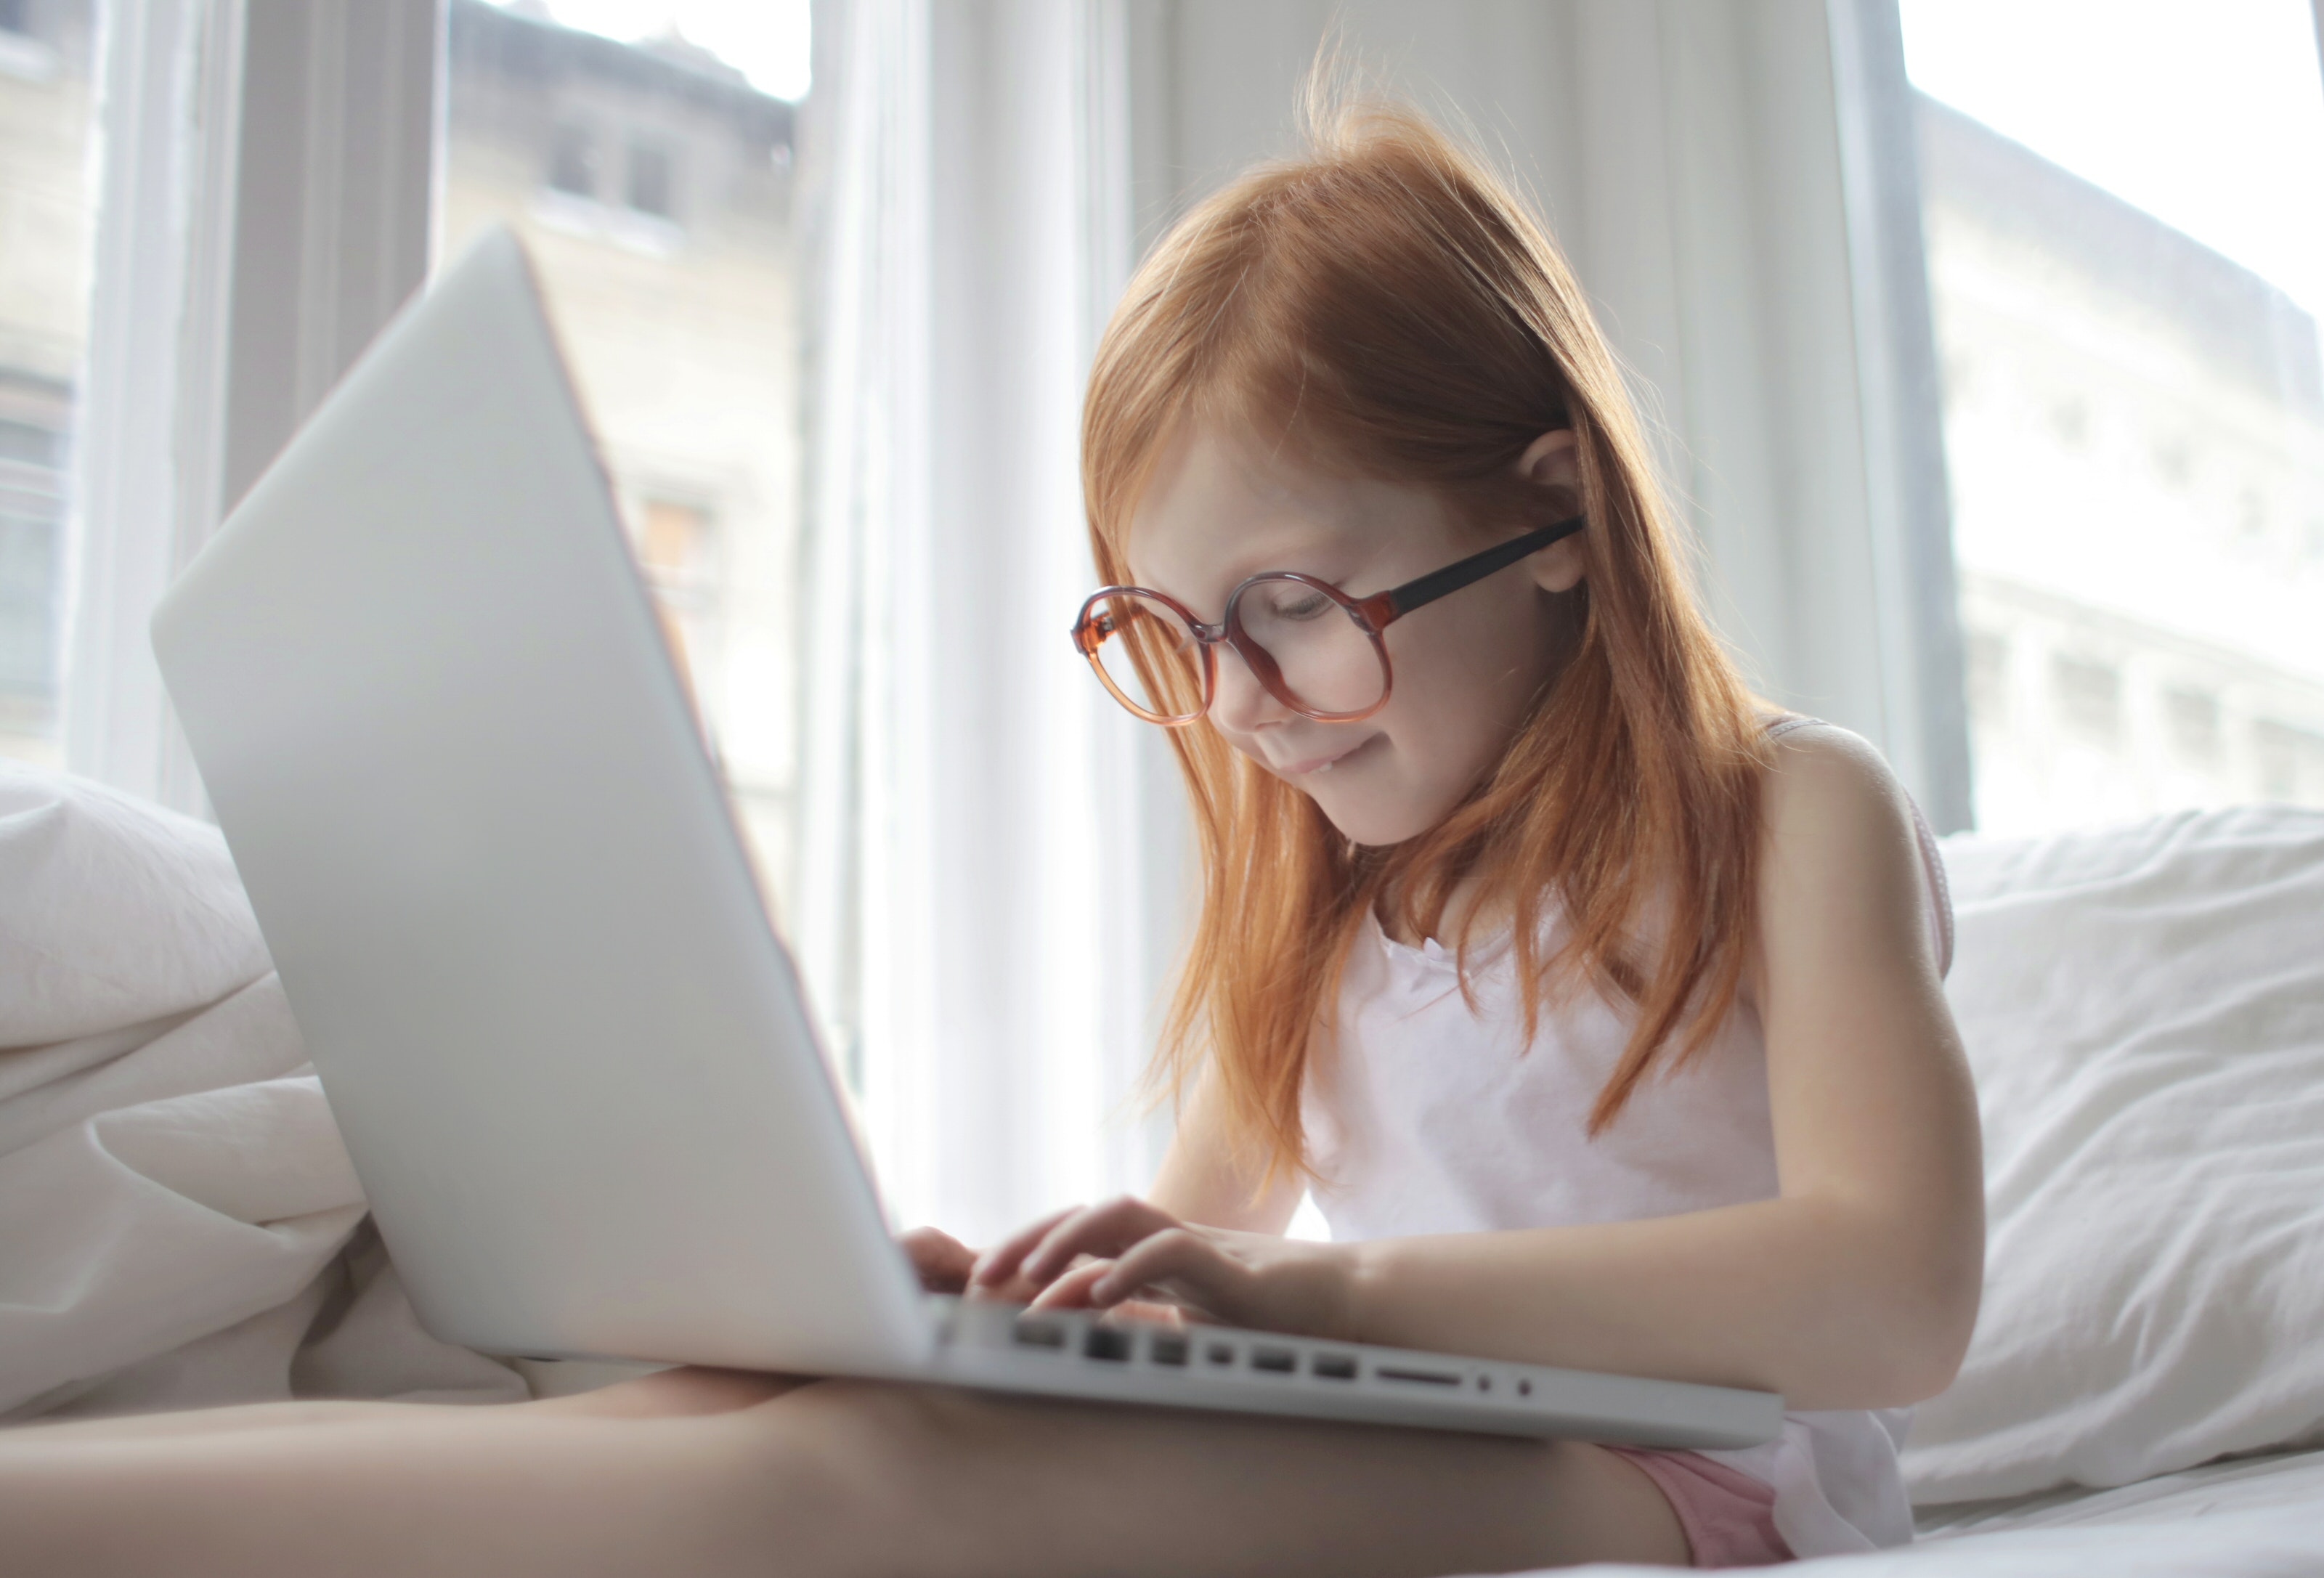 Онлайн-вечеринка и свежий воздух: пять идей, как уговорить ребенка остаться дома